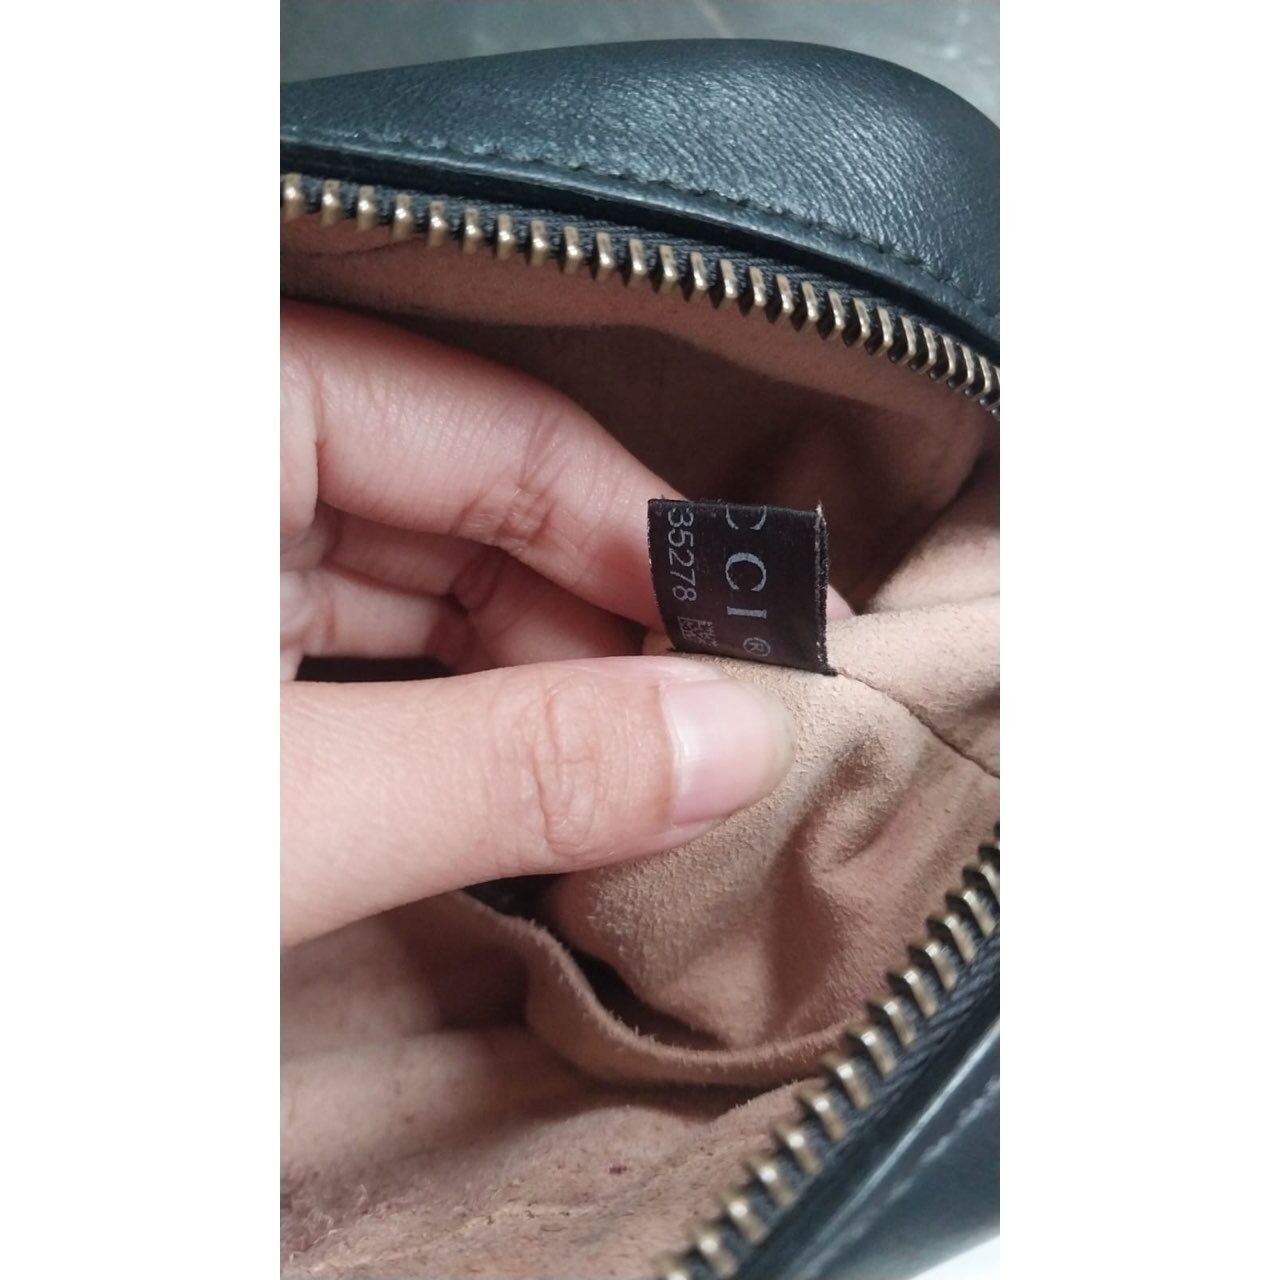 Gucci Black Handbag